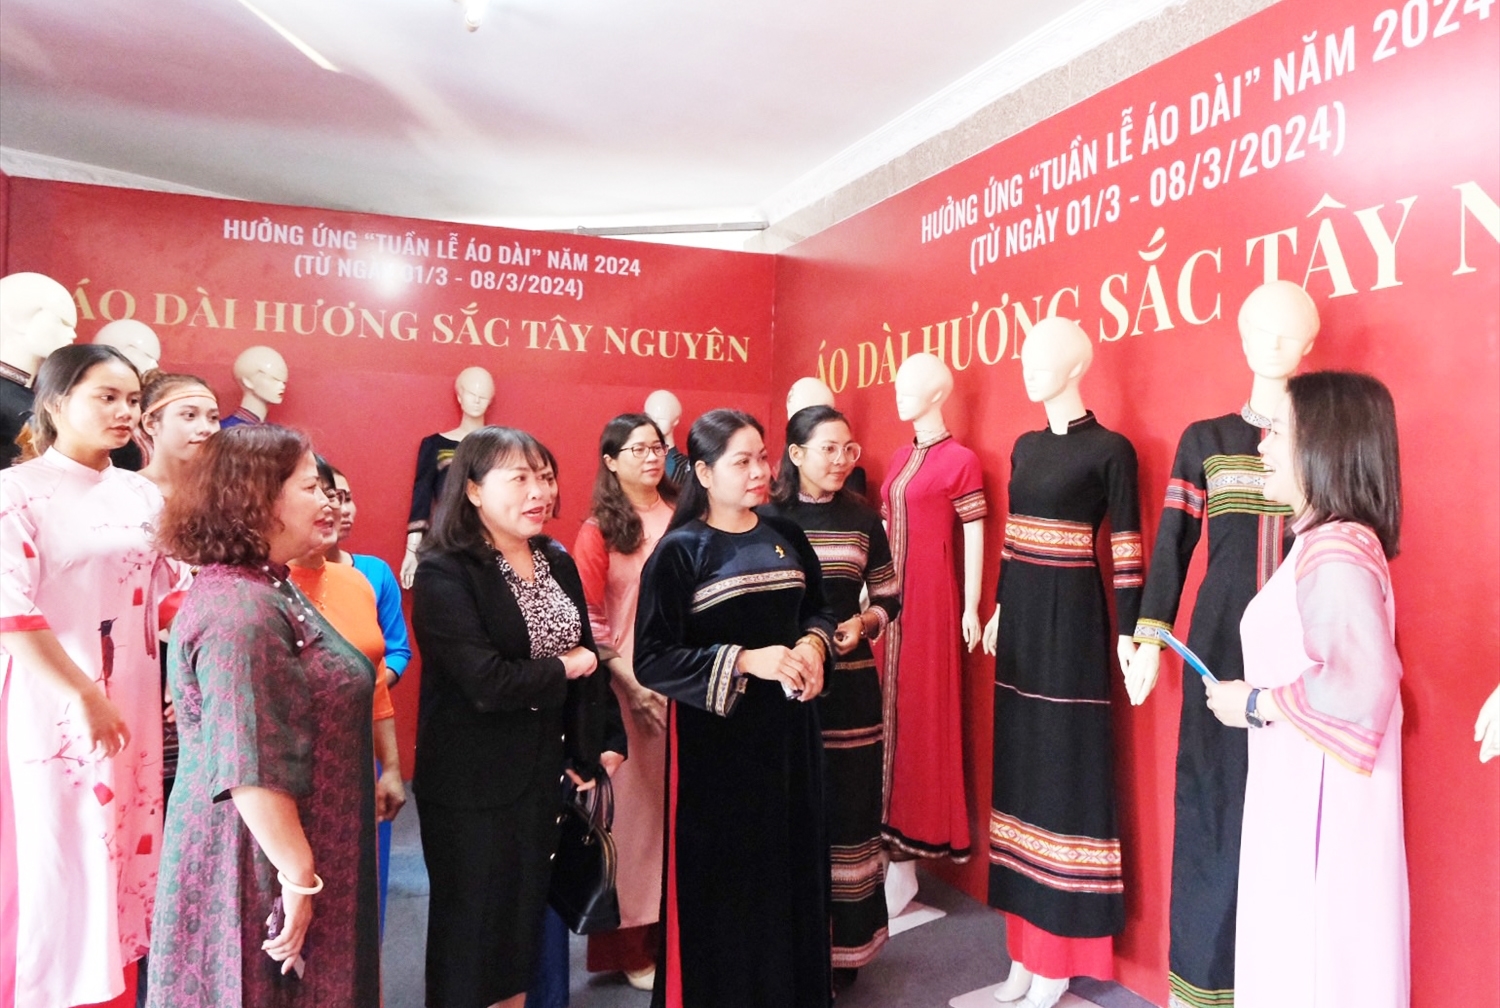 Hội Liên hiệp Phụ nữ tỉnh Gia Lai trưng bày áo dài với chủ đề “Tôi yêu Áo dài Việt” với 30 chiếc áo dài truyền thống, cách tân, thổ cẩm